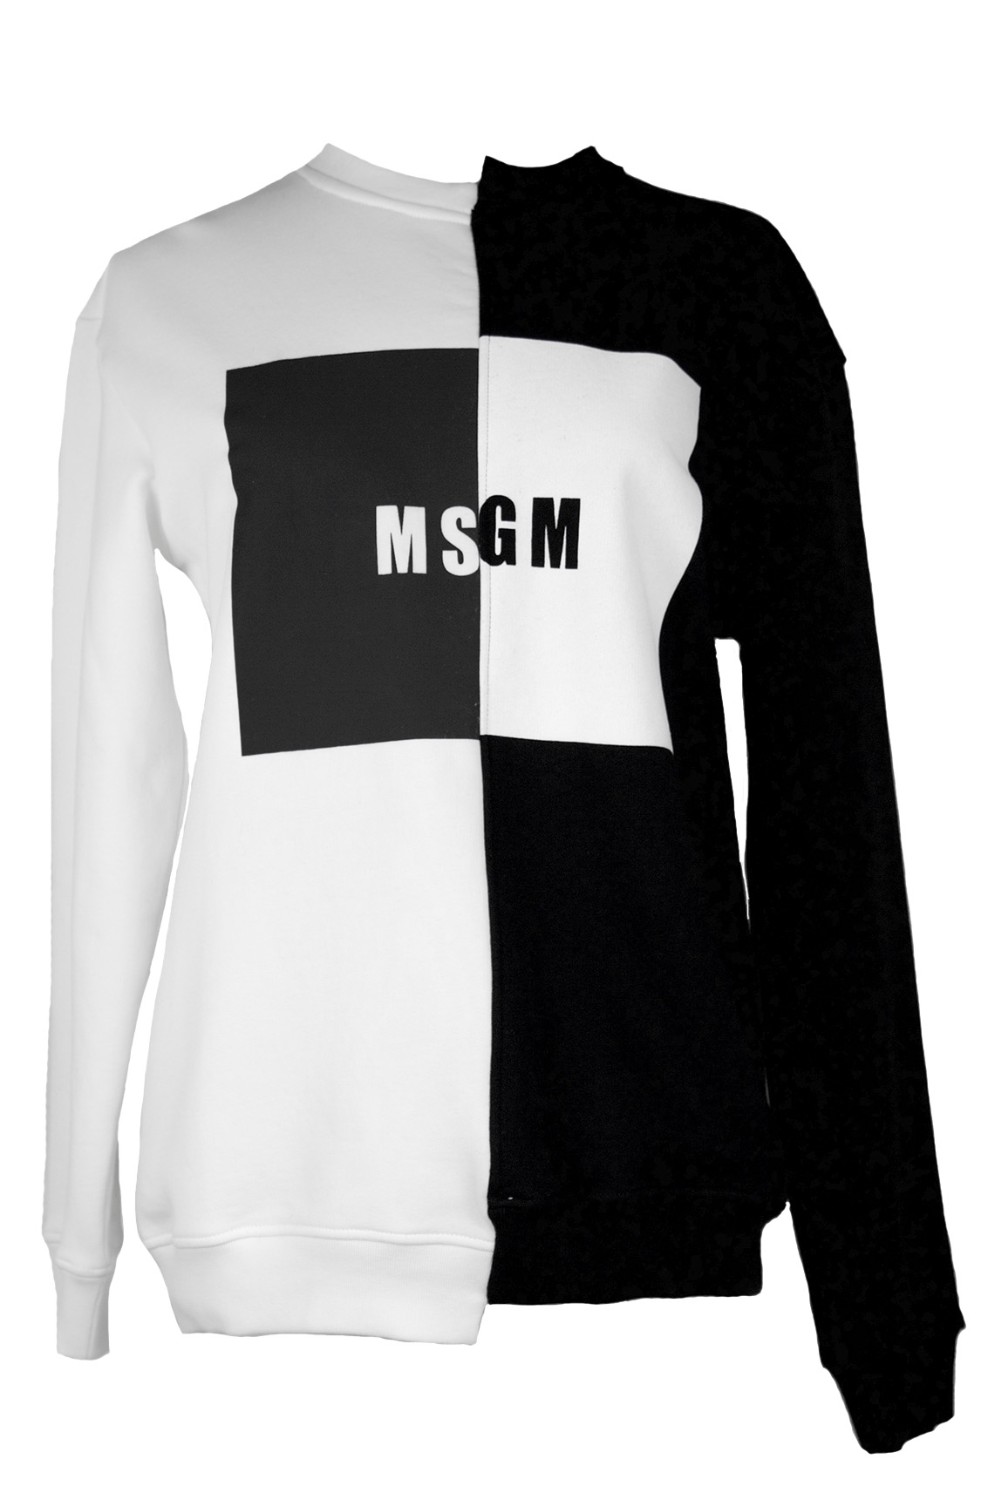 shop MSGM Sales Felpe: Felpa MSGM in due toni, black and white, logo sul davanti, in cotone, girocollo.

Composizione: 100% cotone number 811